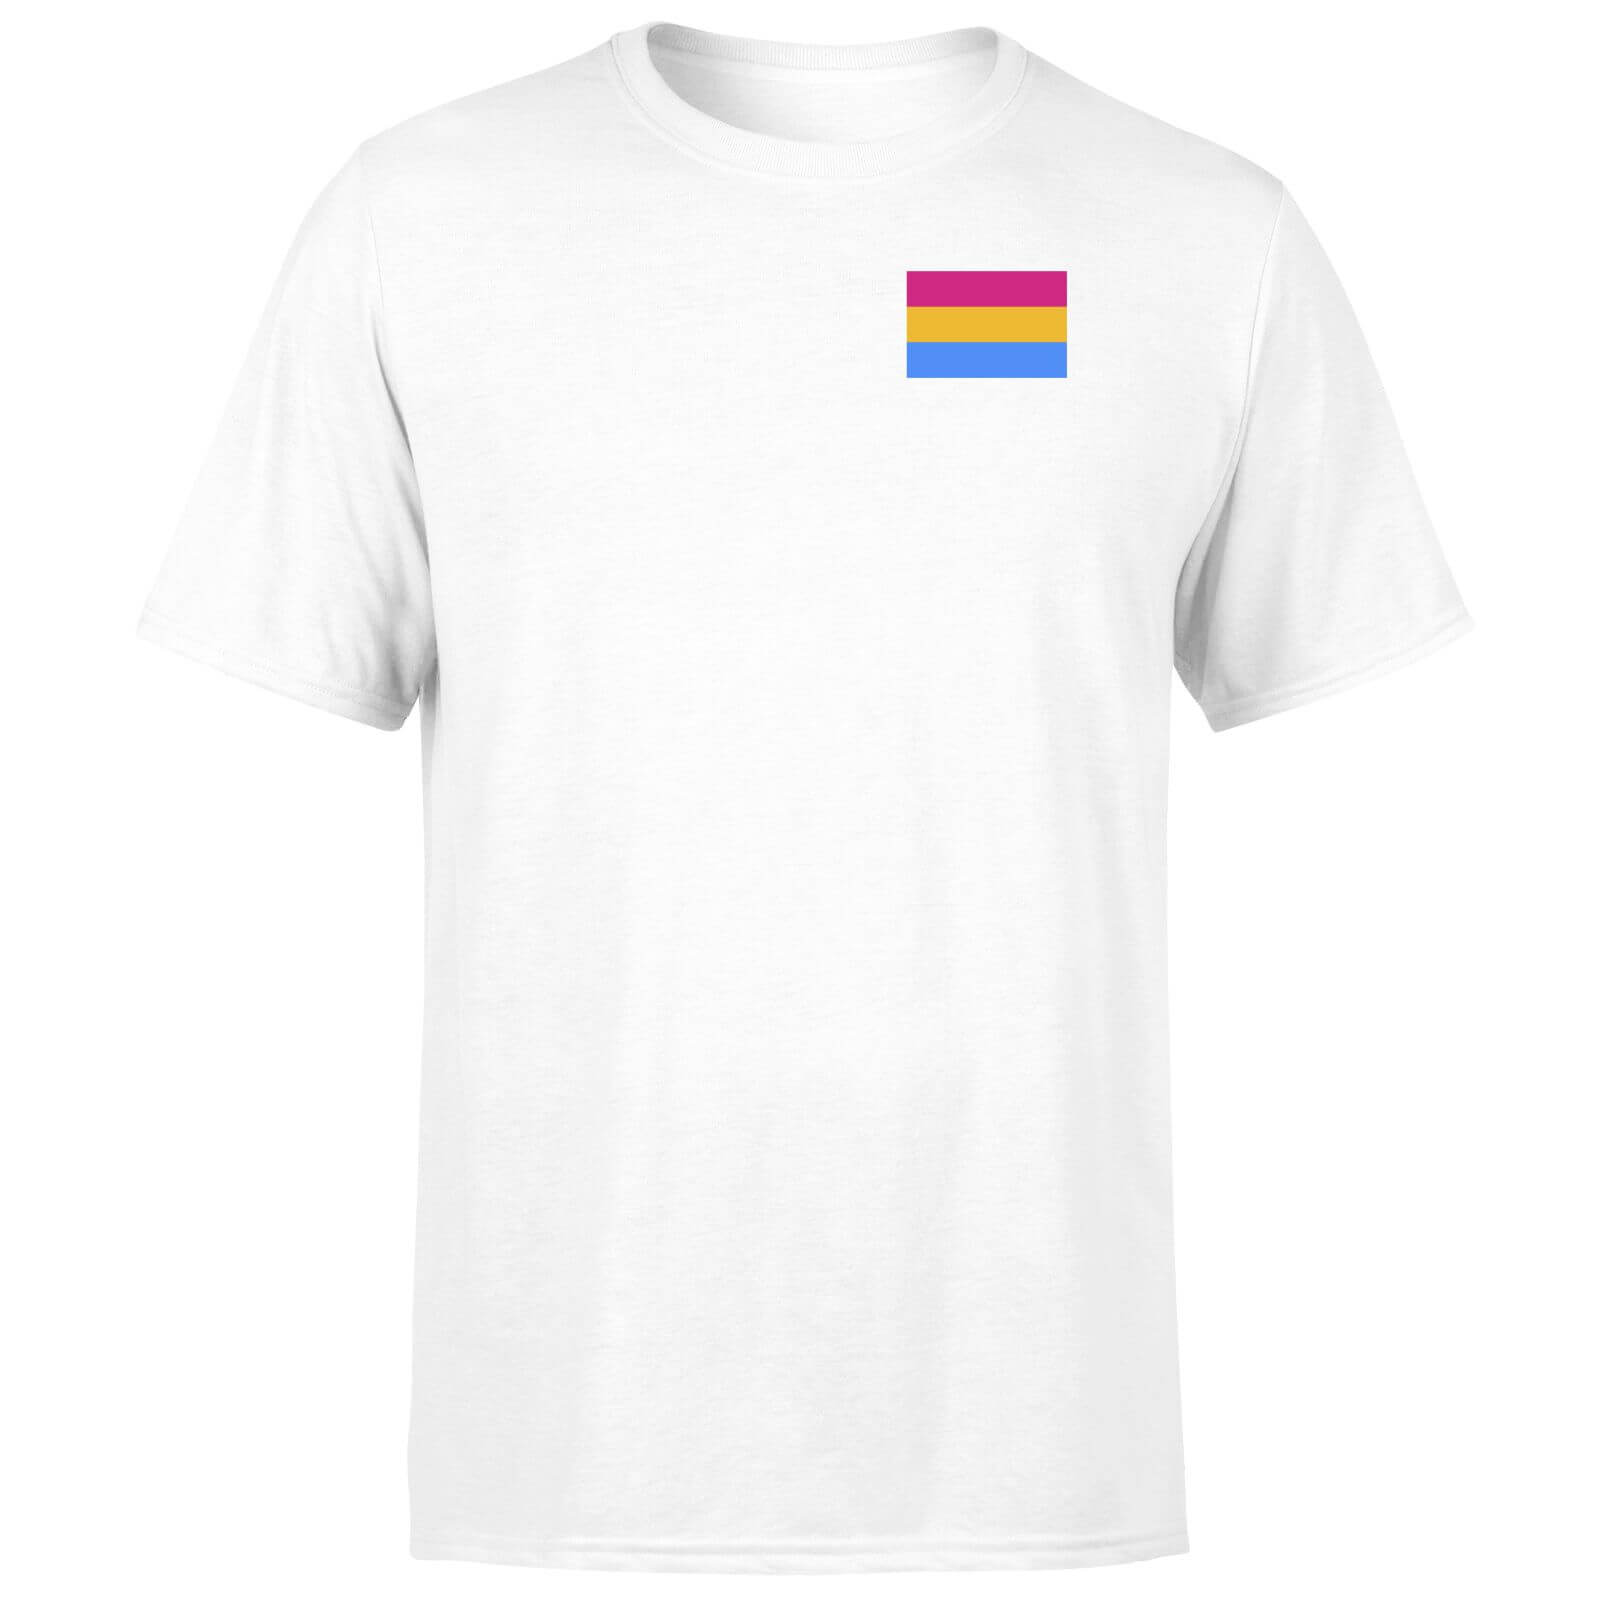 Pansexual Flag T-Shirt - White - XS - White